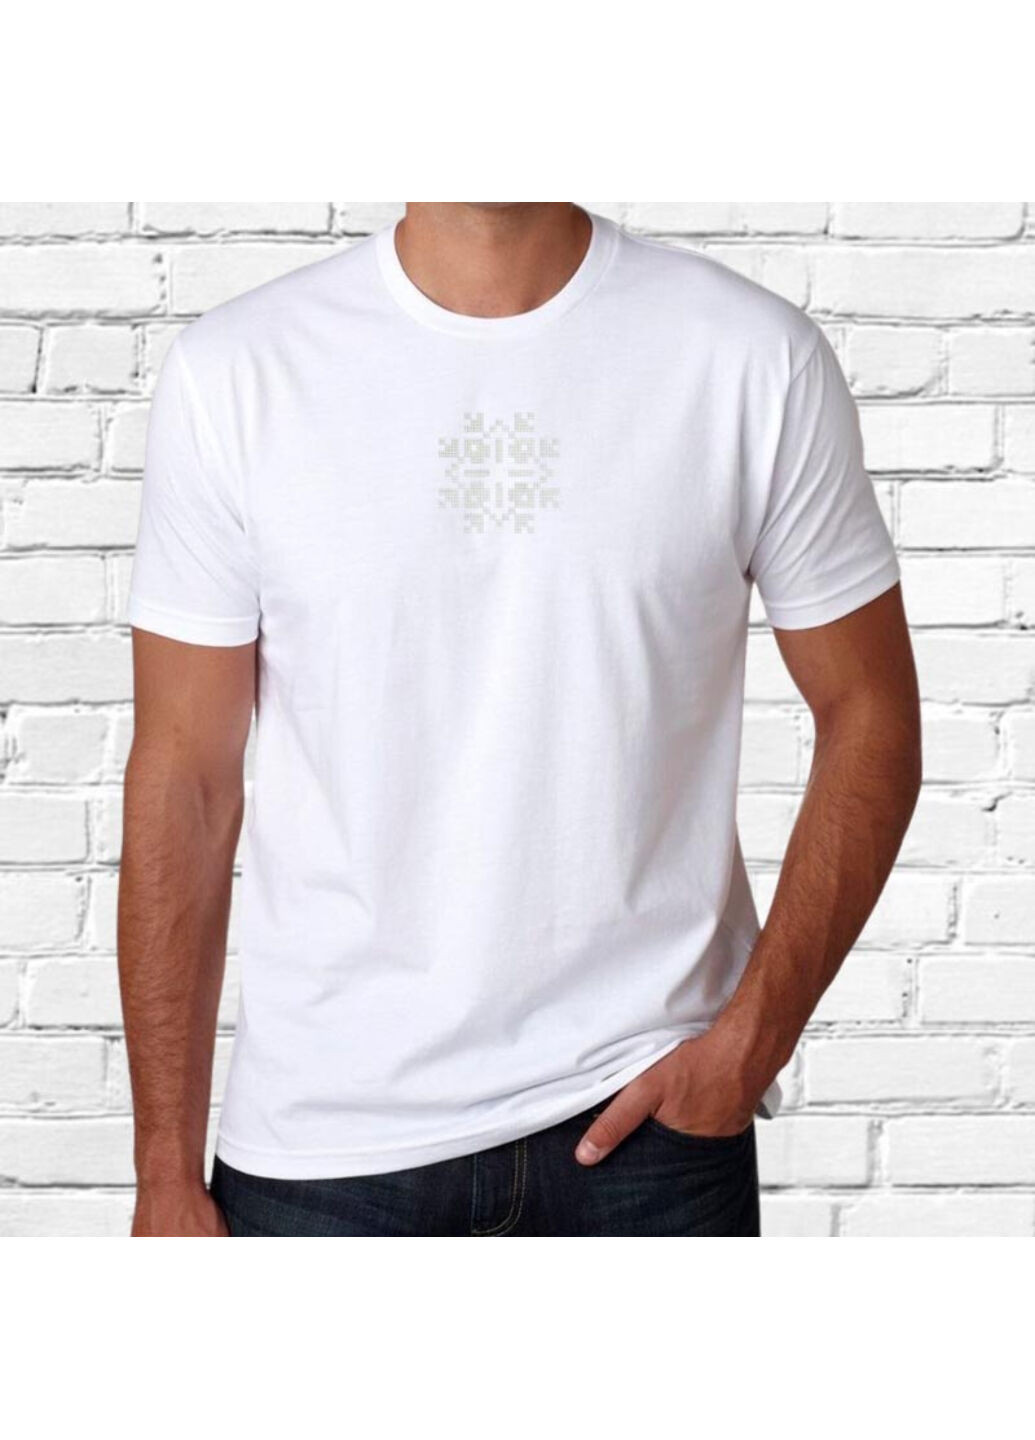 Біла футболка етно з вишивкою 01-22 чоловіча білий l No Brand